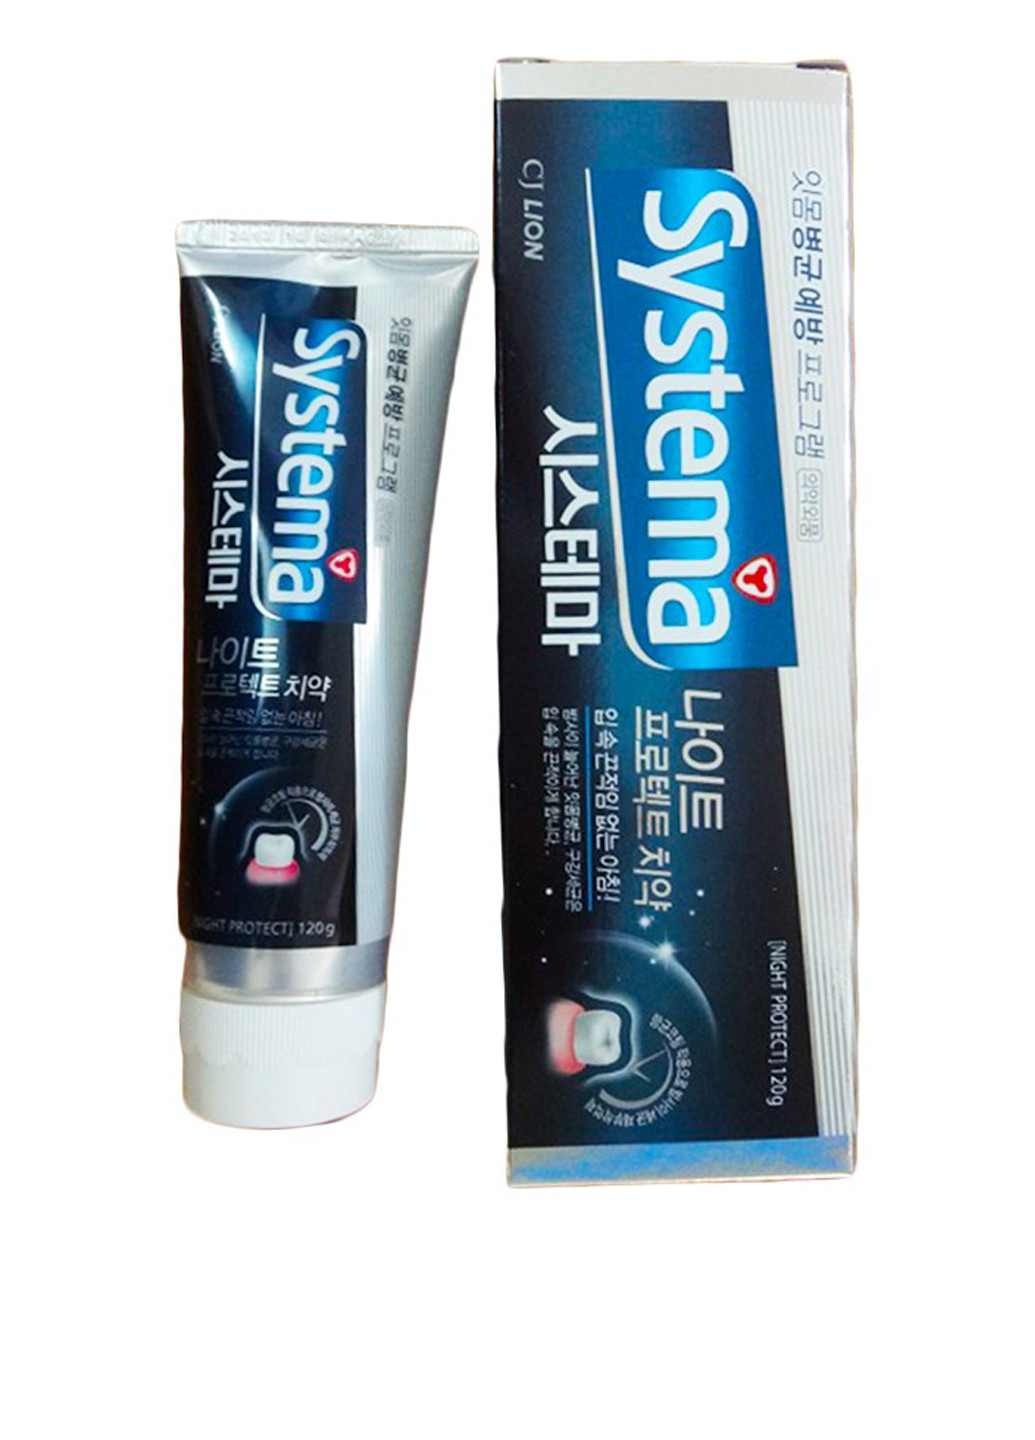 Зубная паста ночная антибактериальная защита, 120 г LION KOREA (124712386)